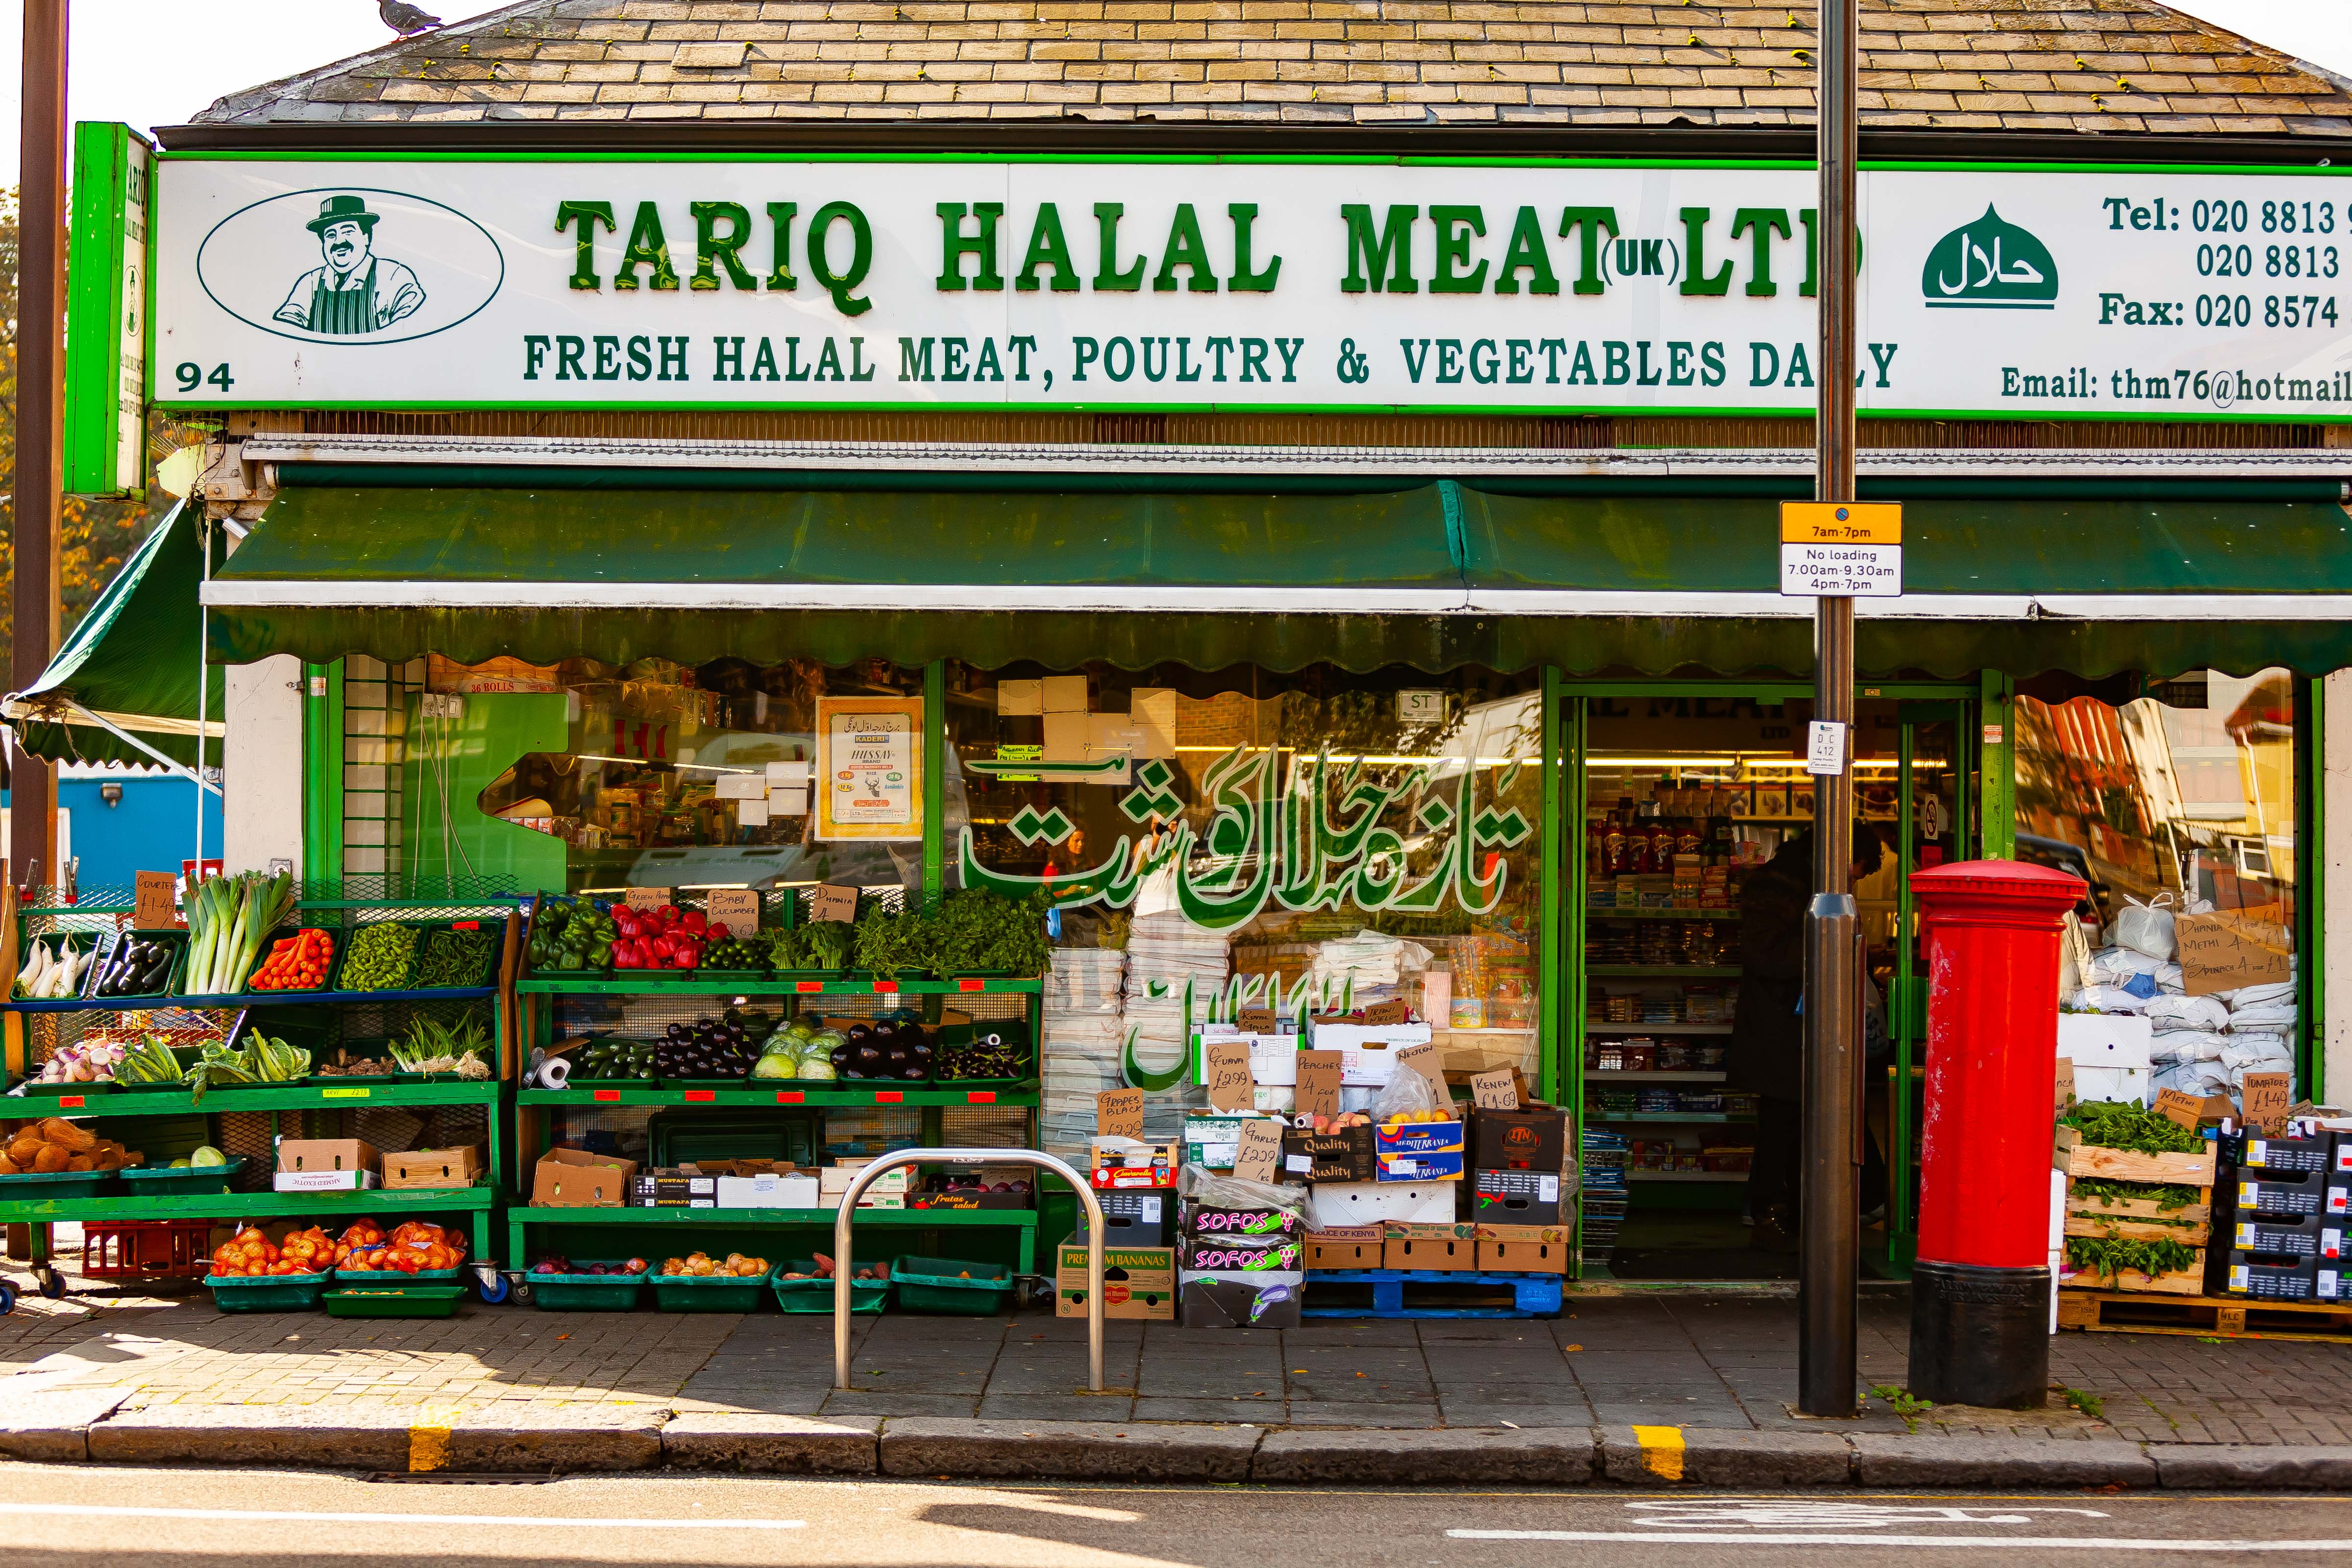 UK, Hillingdon (London) Prov, Tariq Halal Meat, 2009, IMG 3161